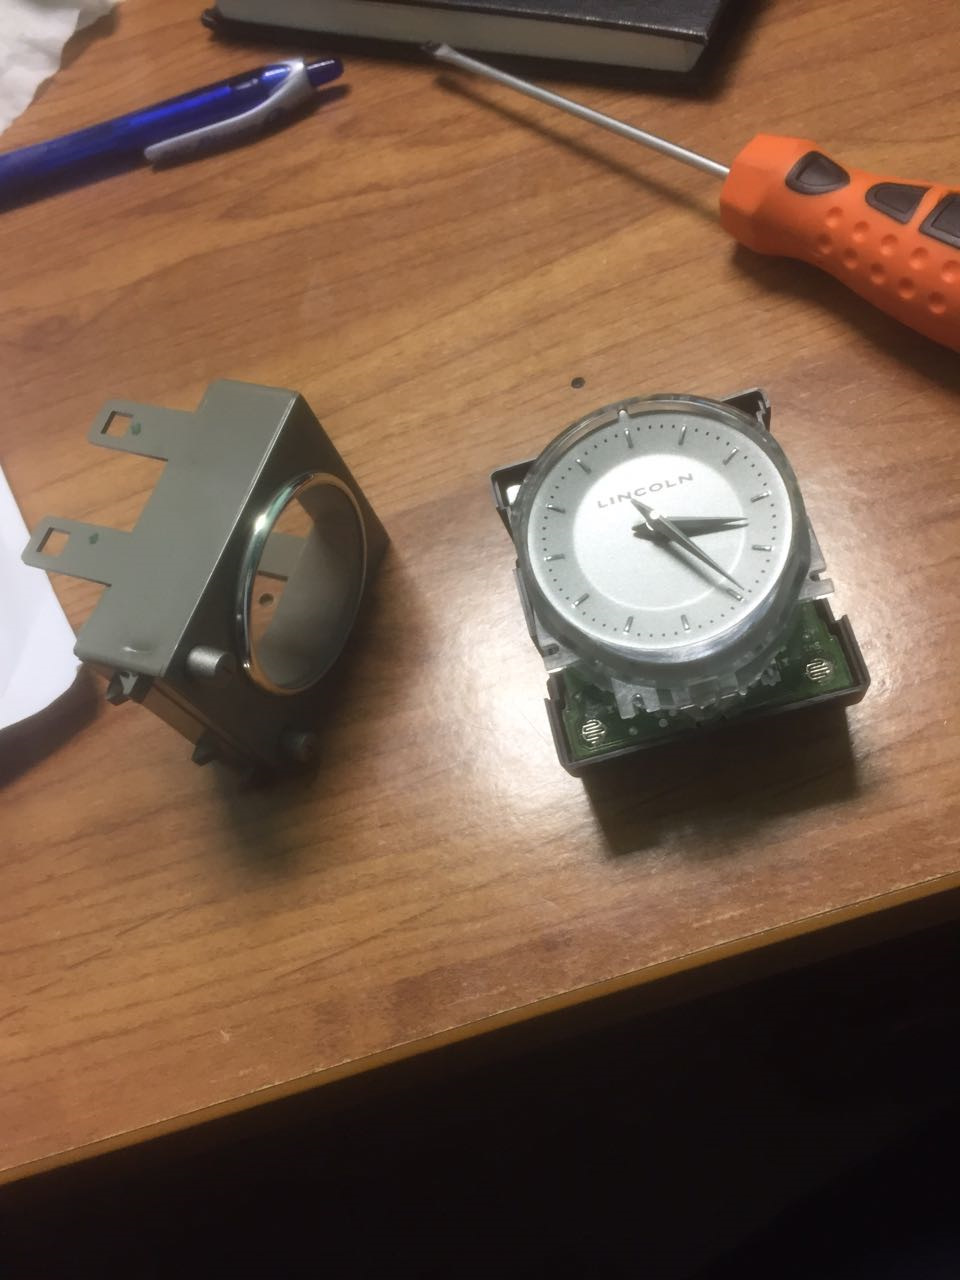 Сломанные часы можно. Часы Lincoln. Вилка автоподзавода часы сломалась. Фото поломанной зарядки от часов с АЛИЭКСПРЕСС. Фото отломлен вход на металлоискателе.